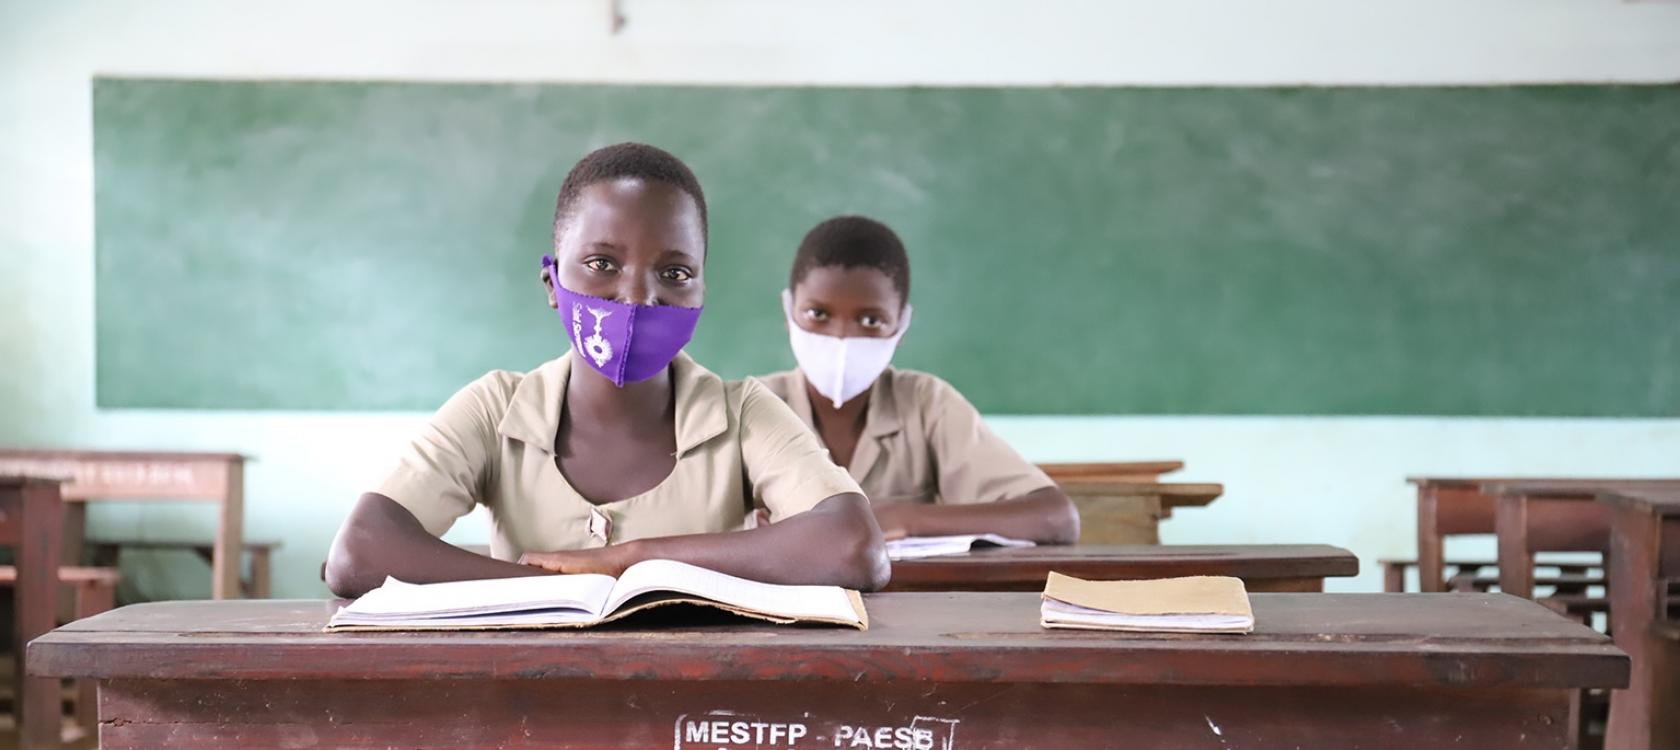 Bénin : la transformation de l’enseignement secondaire est en cours | AFD – Agence Française de Développement